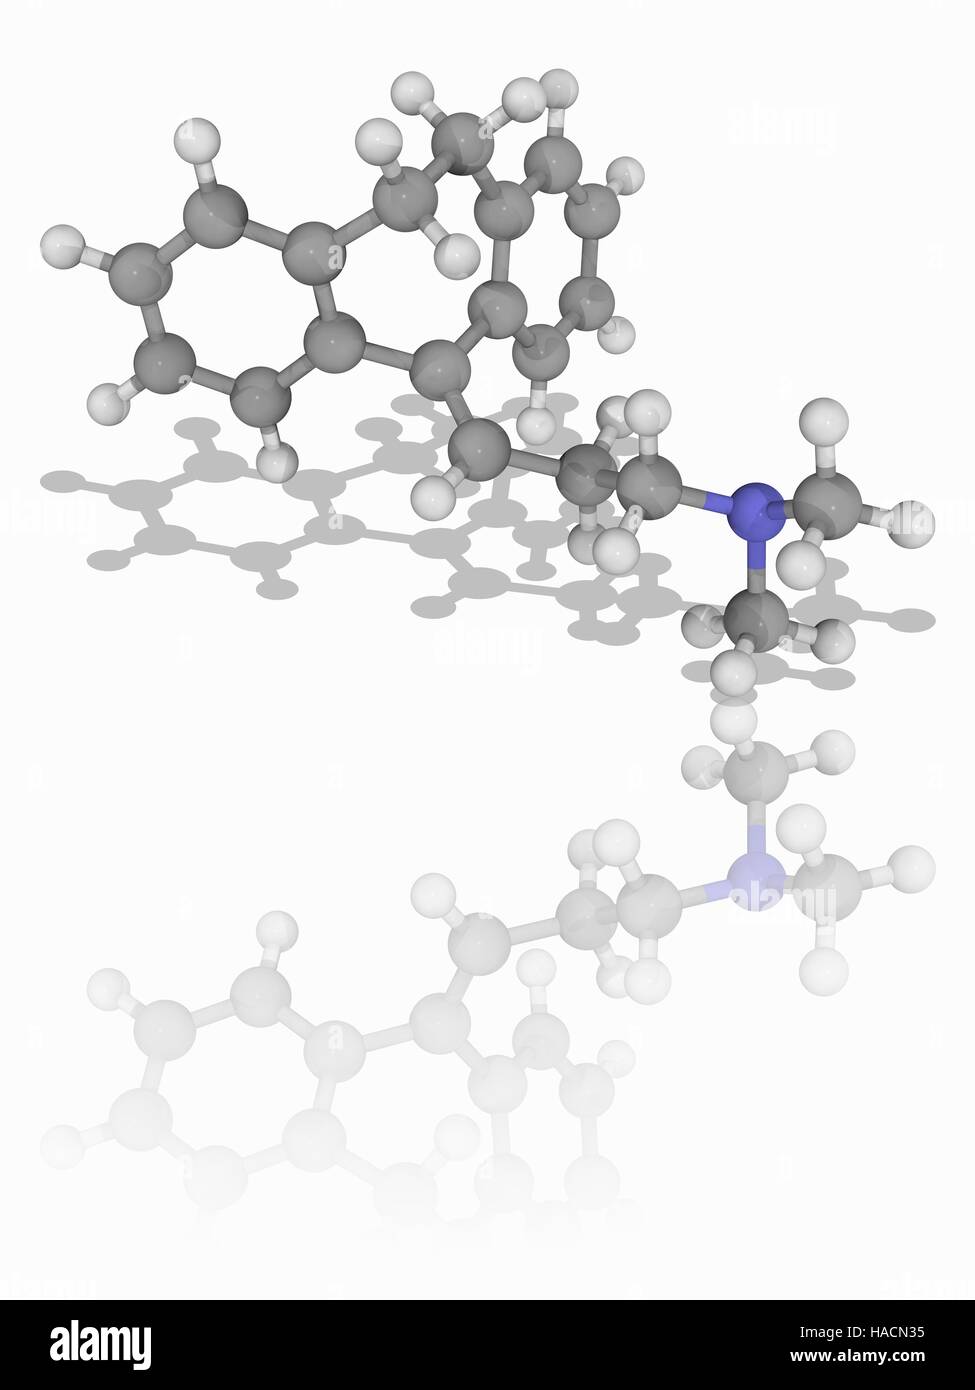 Amitriptylin. Molekulares Modell des Antidepressivum Medikament Amitriptylin (C20. H23. (N). dieses Medikament wird auch zur Behandlung einer Vielzahl von psychischen Störungen. Atome als Kugeln dargestellt werden und sind farblich gekennzeichnet: Kohlenstoff (grau), Wasserstoff (weiß) und Stickstoff (blau). Abbildung. Stockfoto